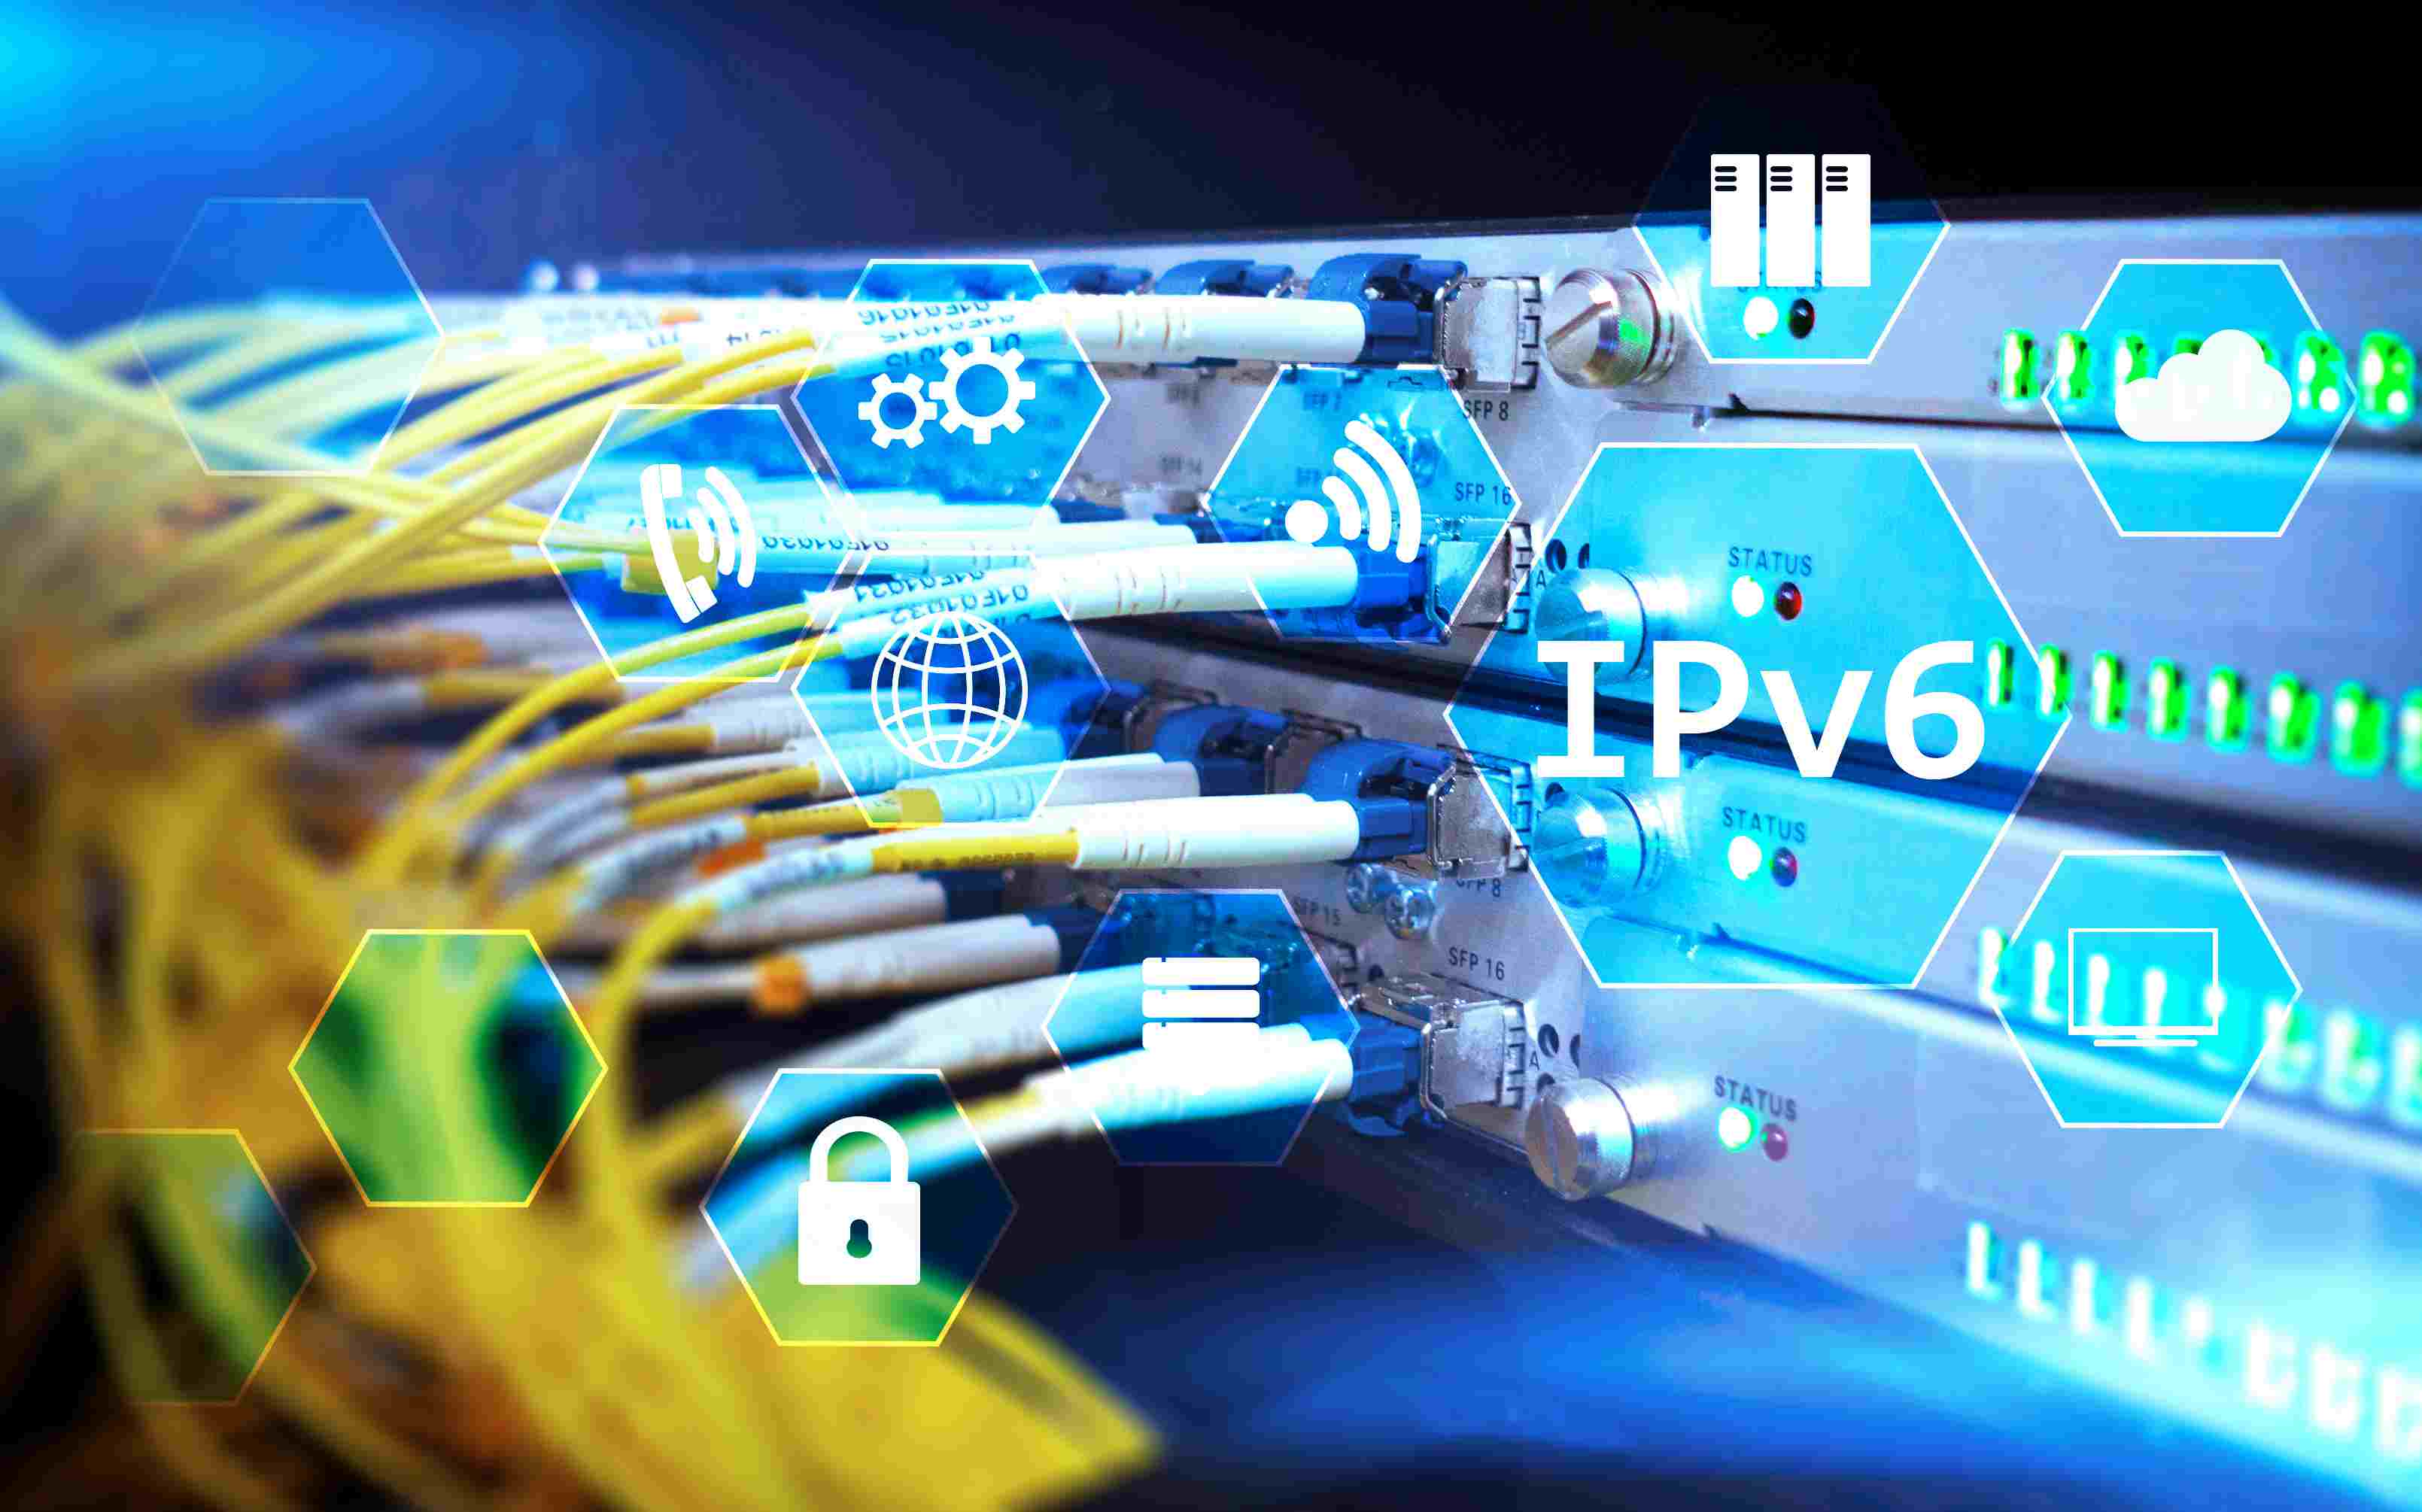 Kabels aangesloten op servers waarop IPv6 is geplaatst